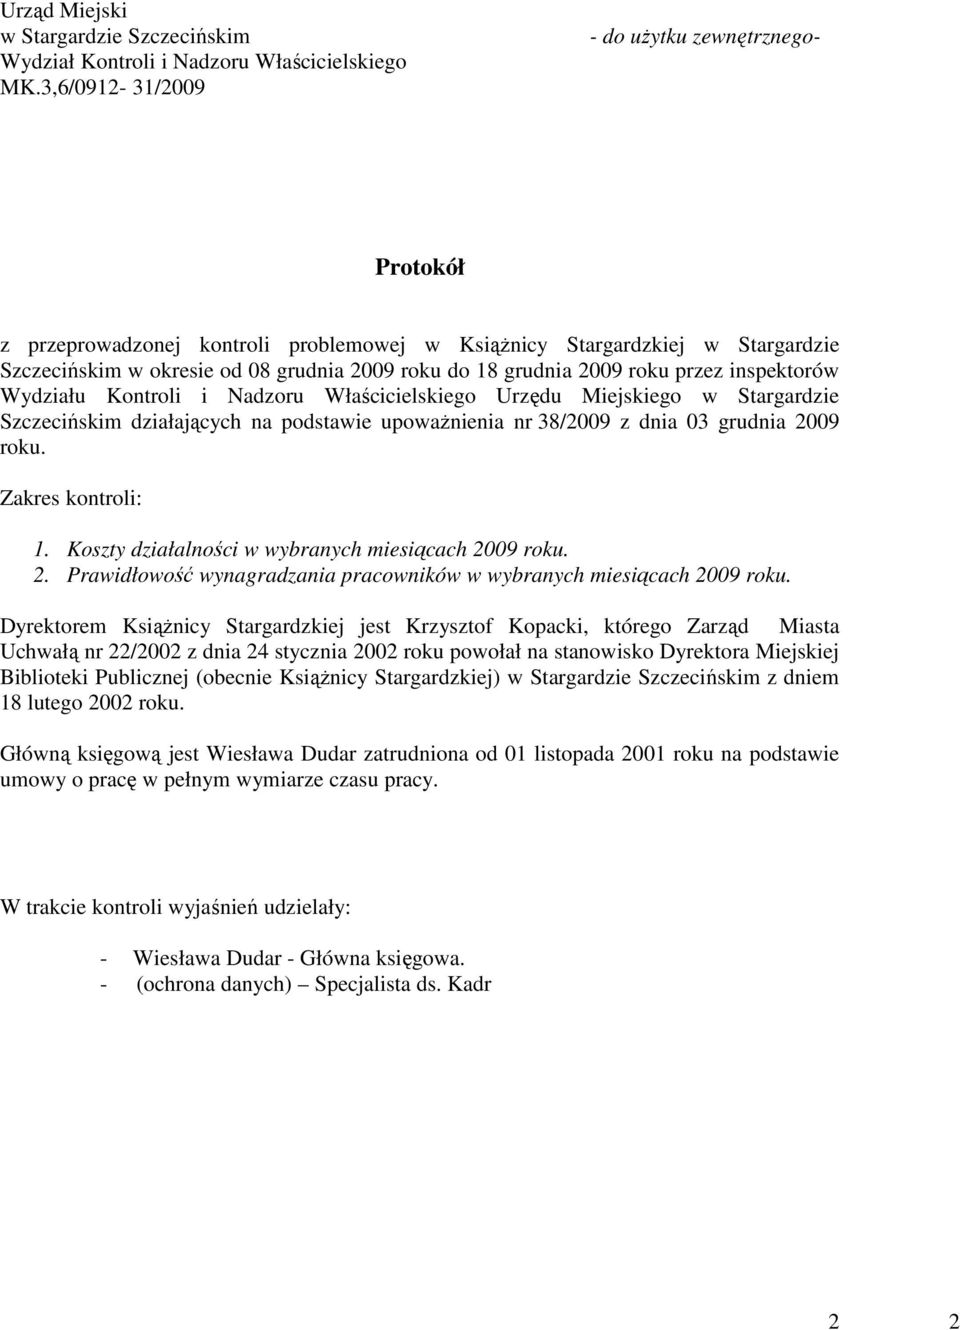 roku przez inspektorów Wydziału Kontroli i Nadzoru Właścicielskiego Urzędu Miejskiego w Stargardzie Szczecińskim działających na podstawie upowaŝnienia nr 38/2009 z dnia 03 grudnia 2009 roku.